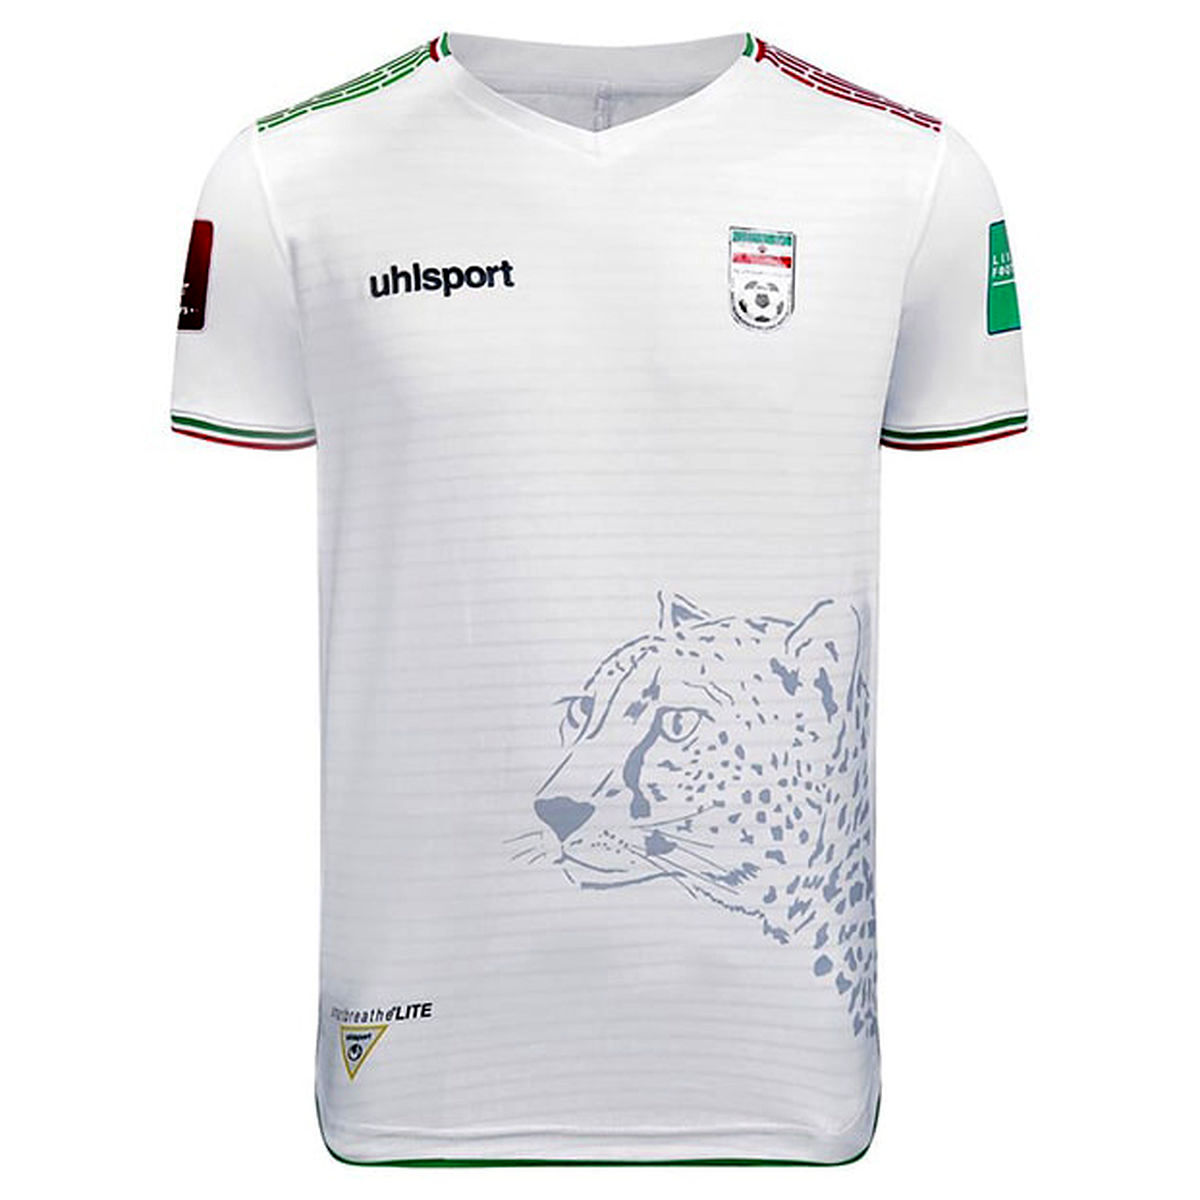 پایان طراحی پیراهن تیم ملی یوز ایرانی کجا رفت؟!